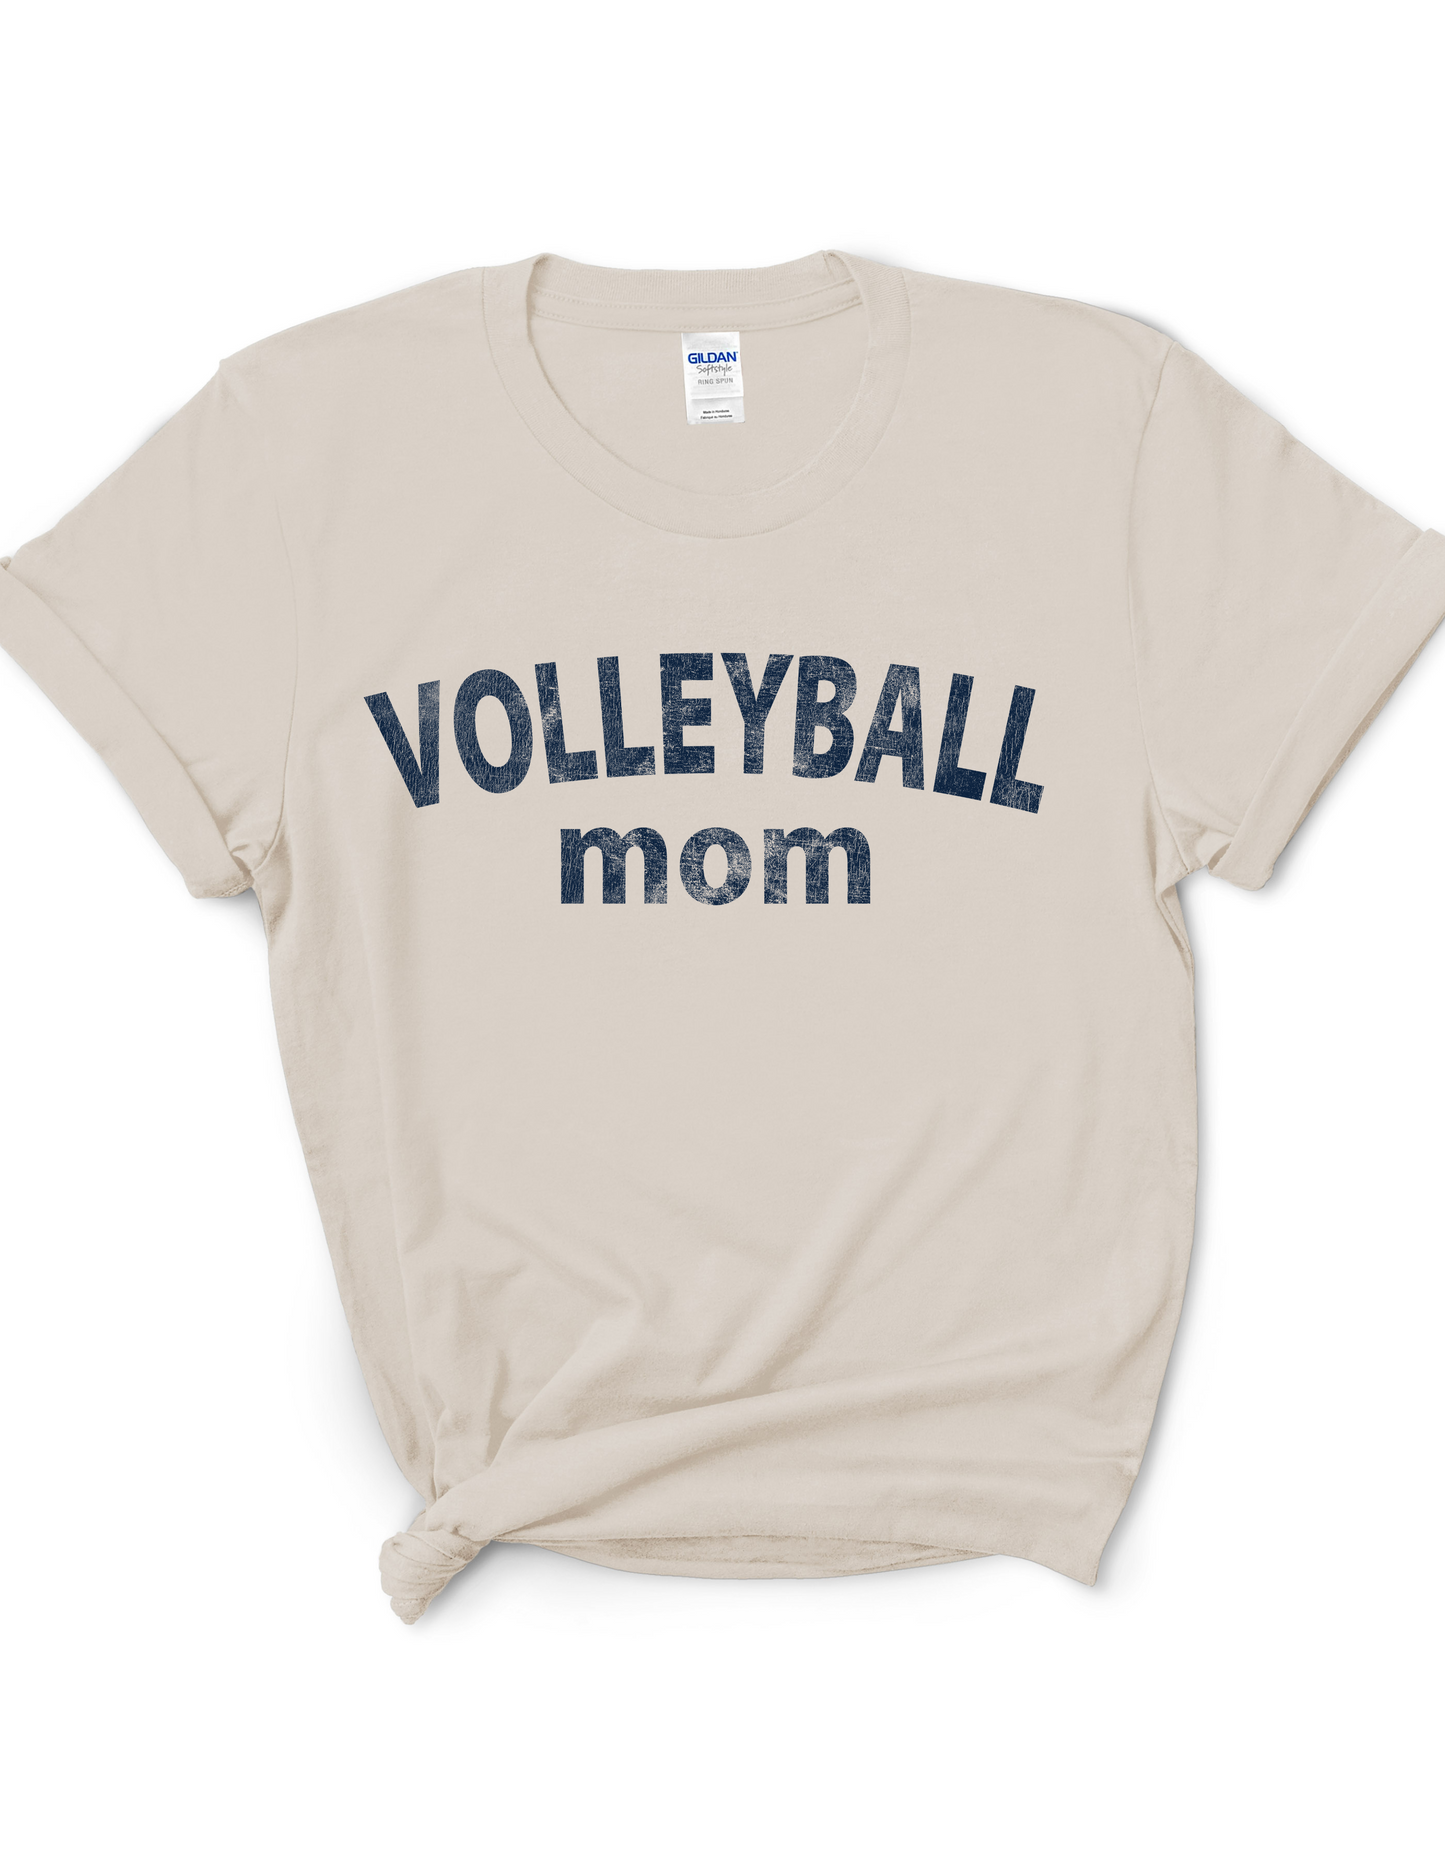 Mom Era - Volleyball